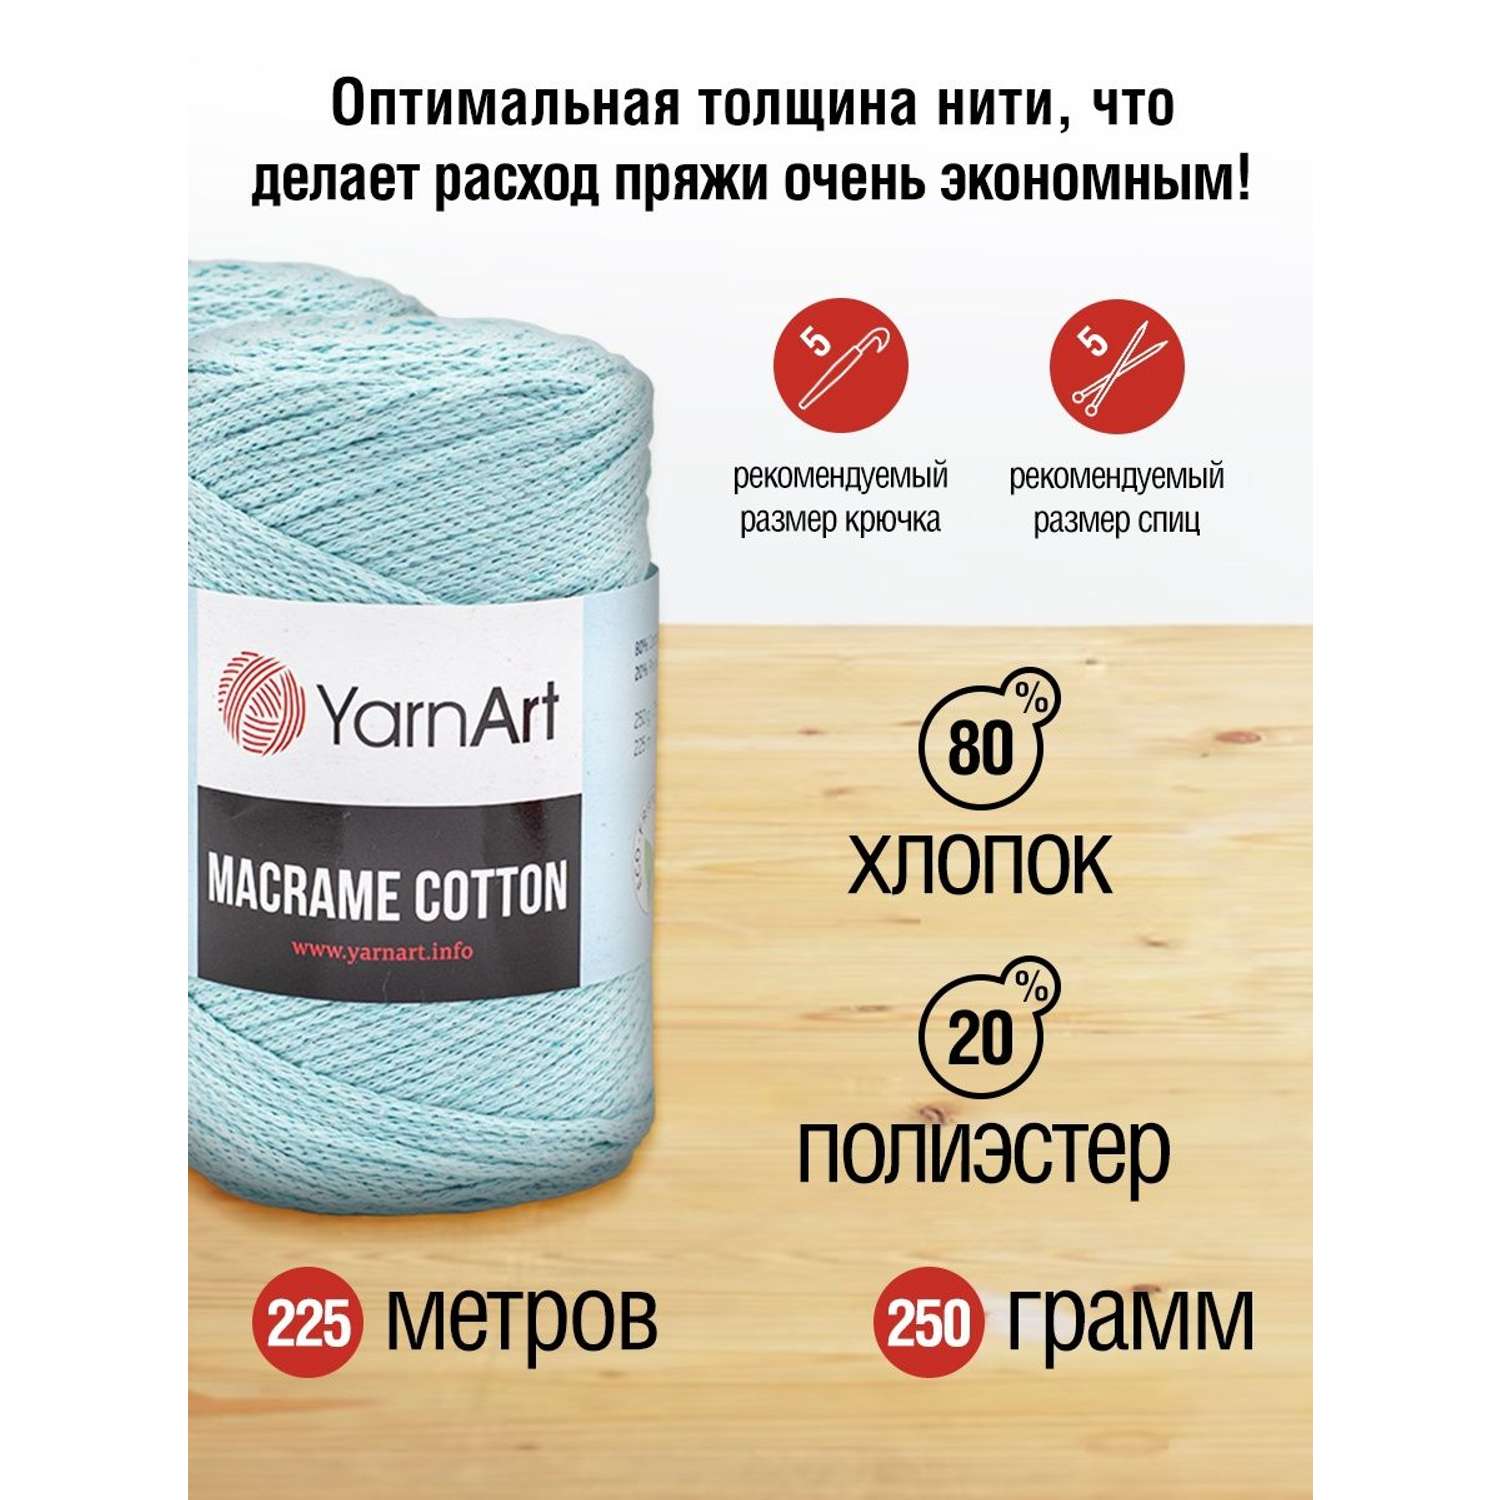 Пряжа YarnArt Macrame Cotton в виде шнура 250 г 225 м 775 холодный мятный 4 мотка - фото 3